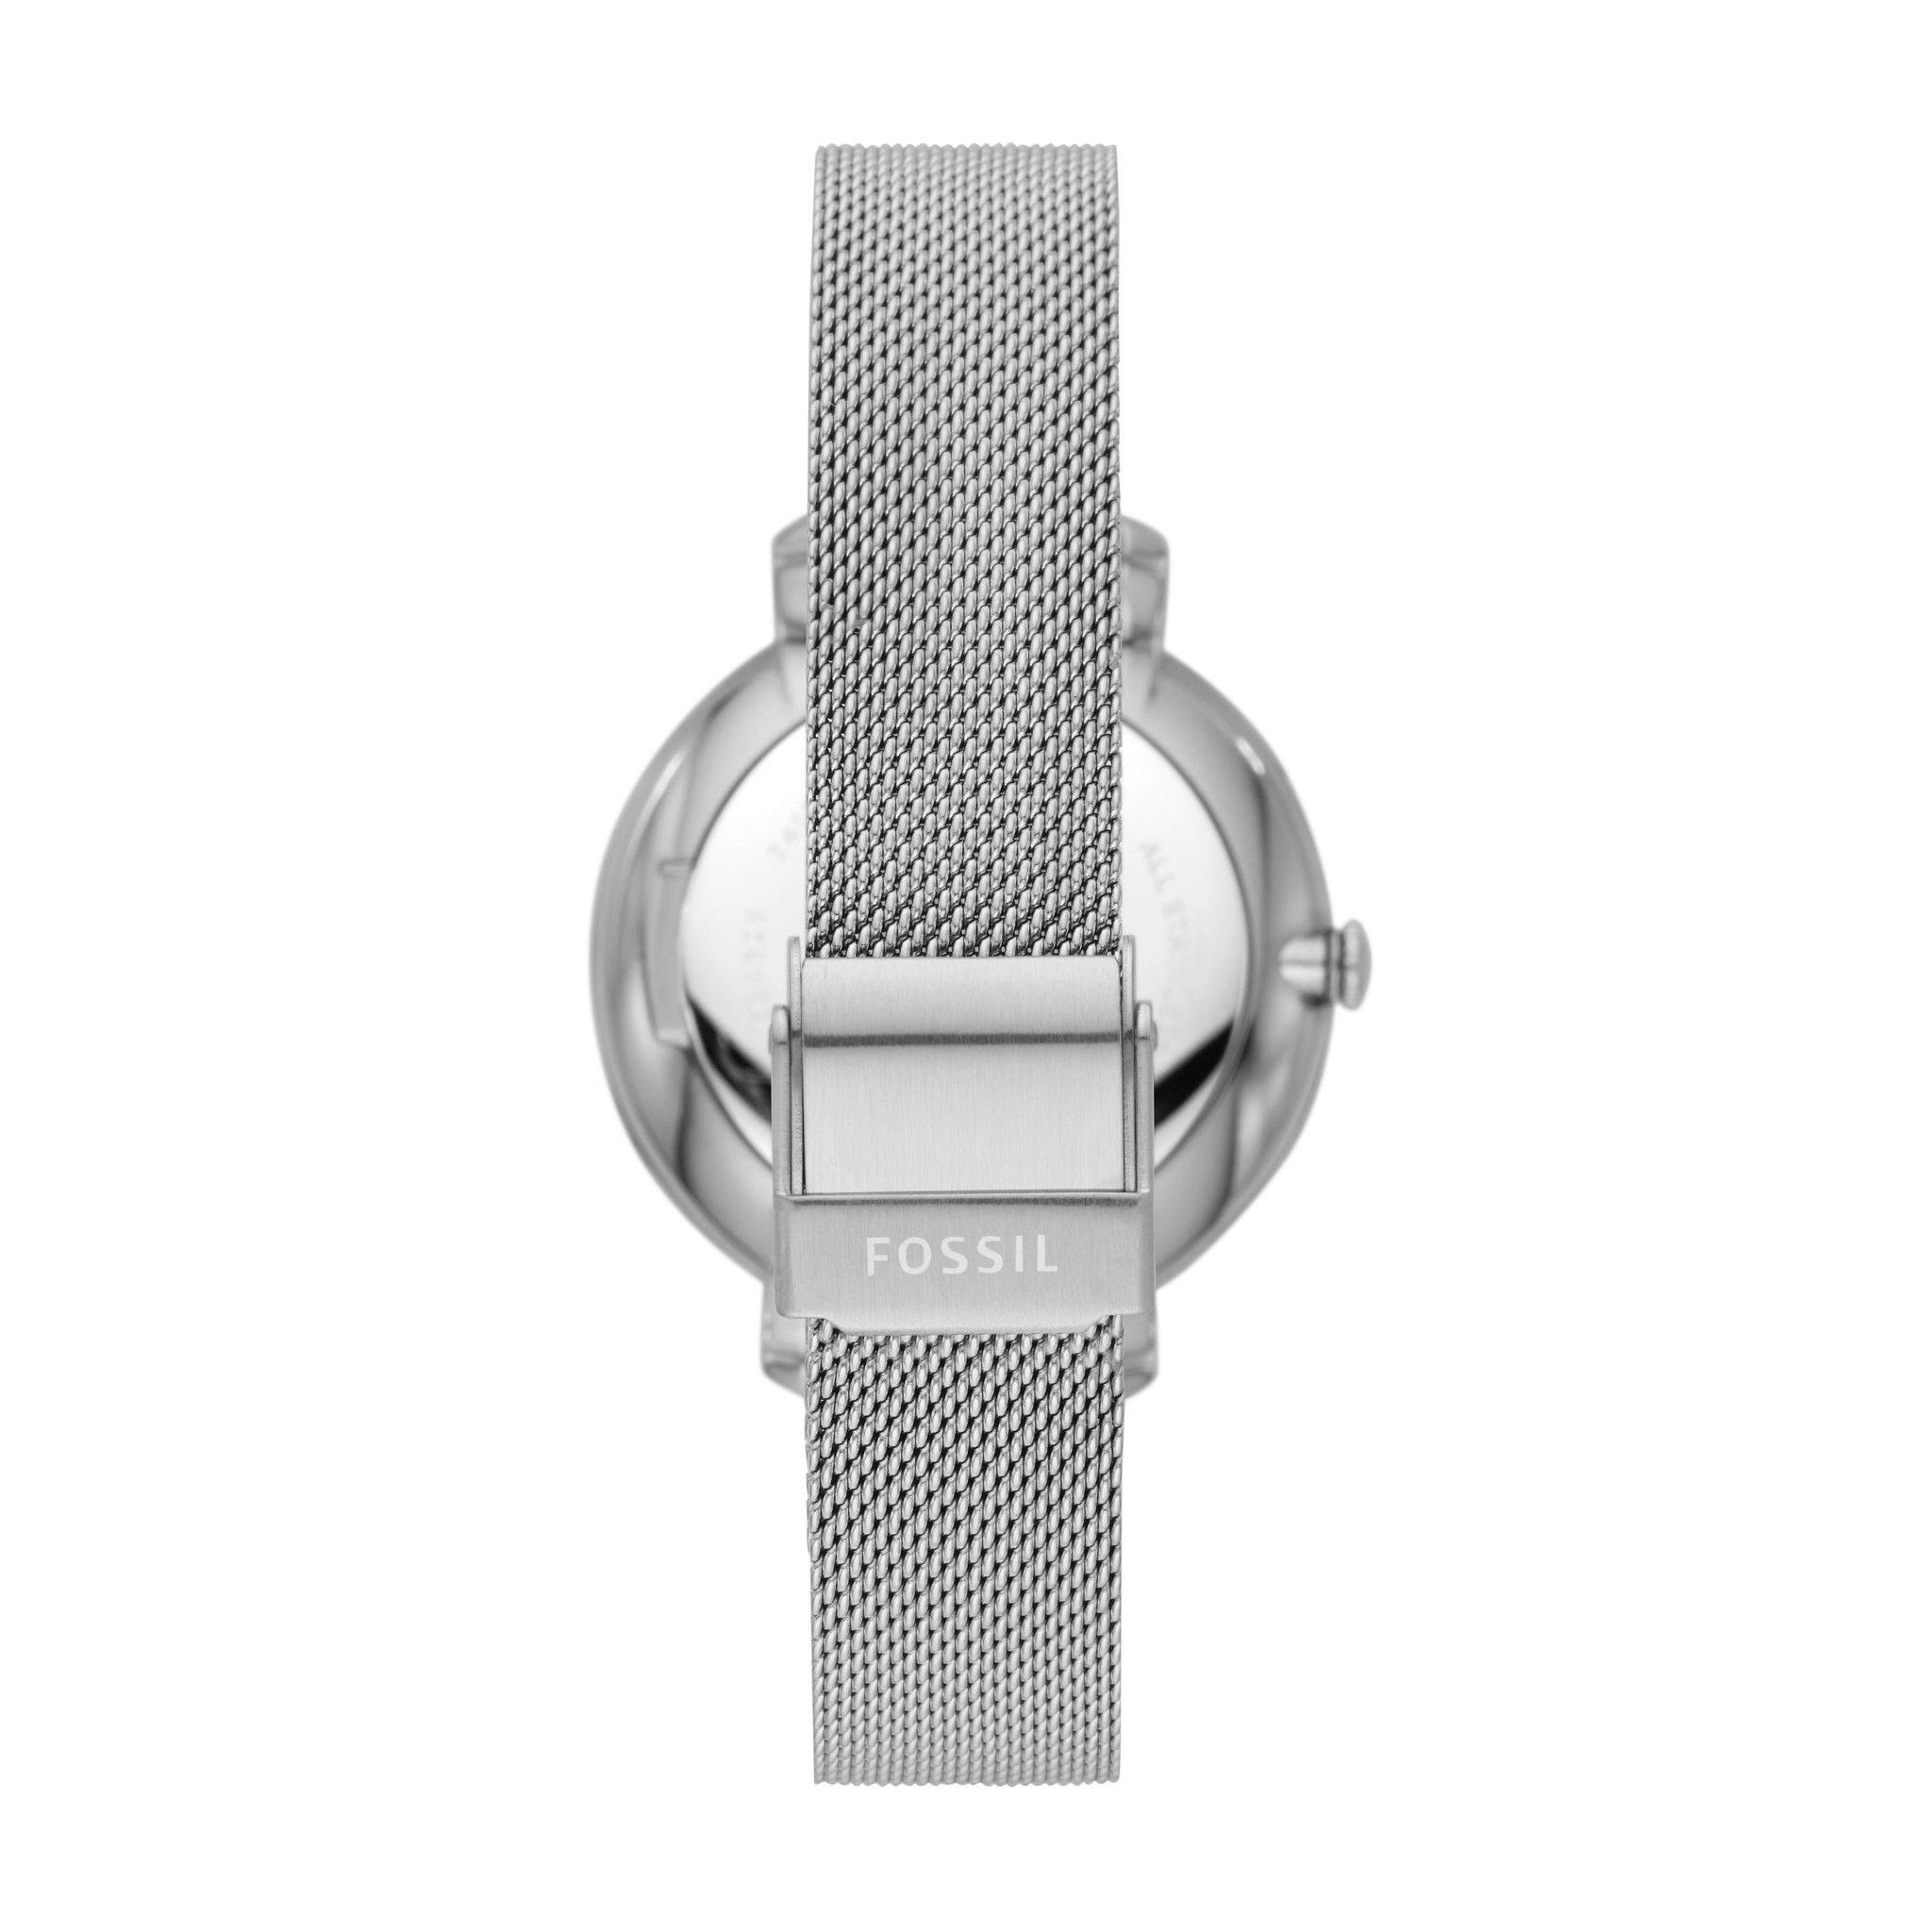  Đồng hồ Kim nữ Fossil JACQUELINE dây kim loại ES4627 - màu bạc 